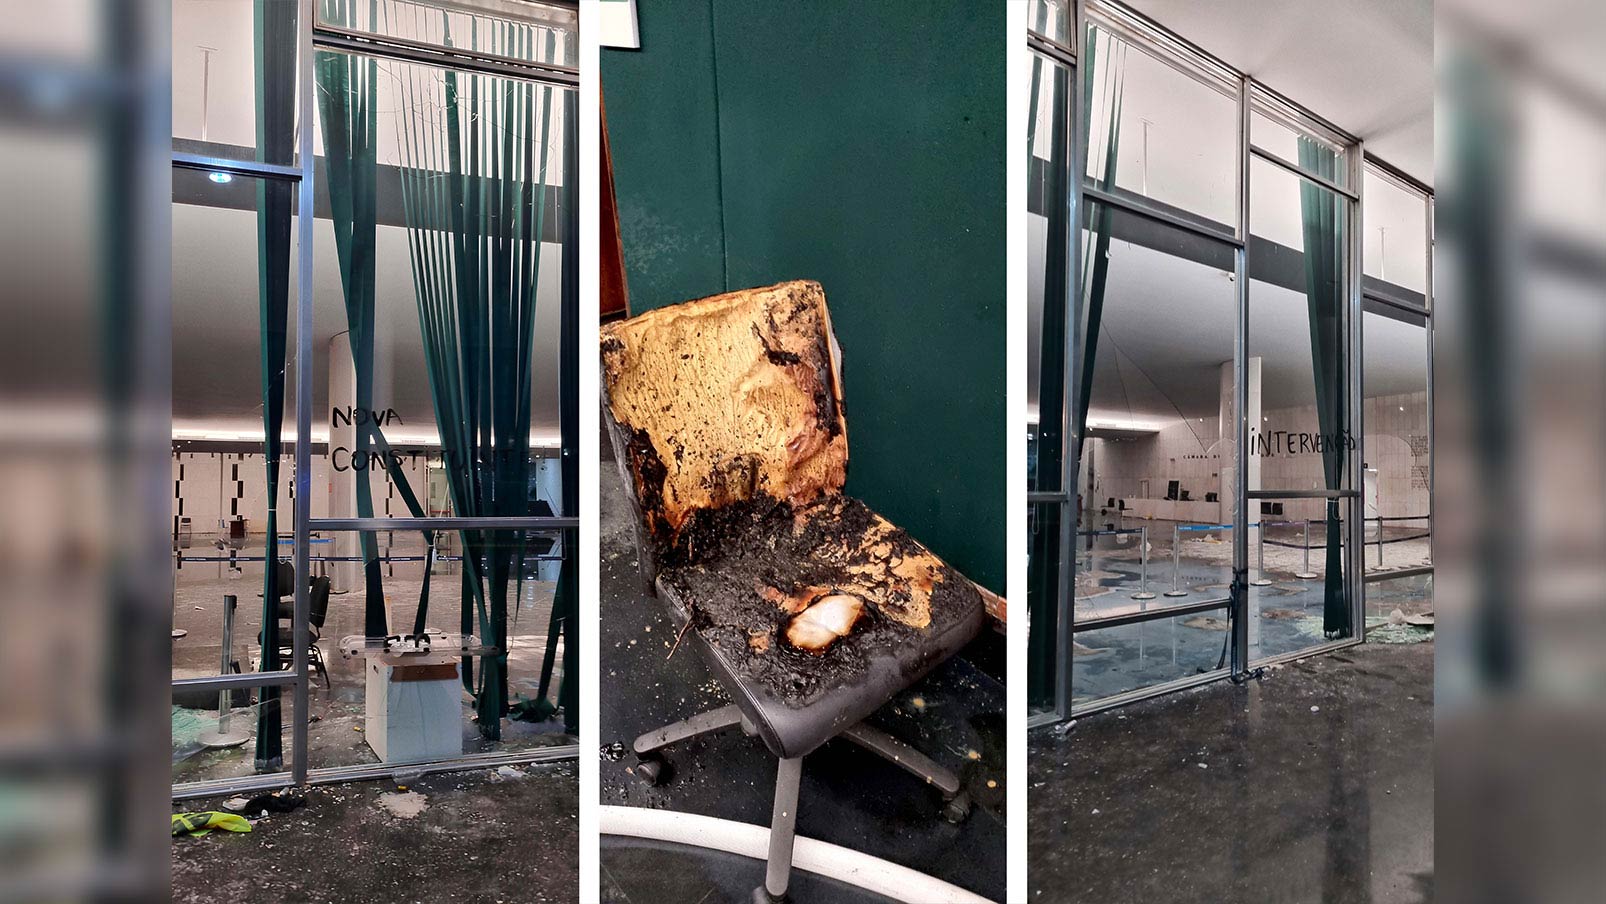 Depredação no Salão Negro do Congresso; no centro, cadeira queimada no corredor das lideranças | Foto: Marcelo Sá de Sousa/Câmara